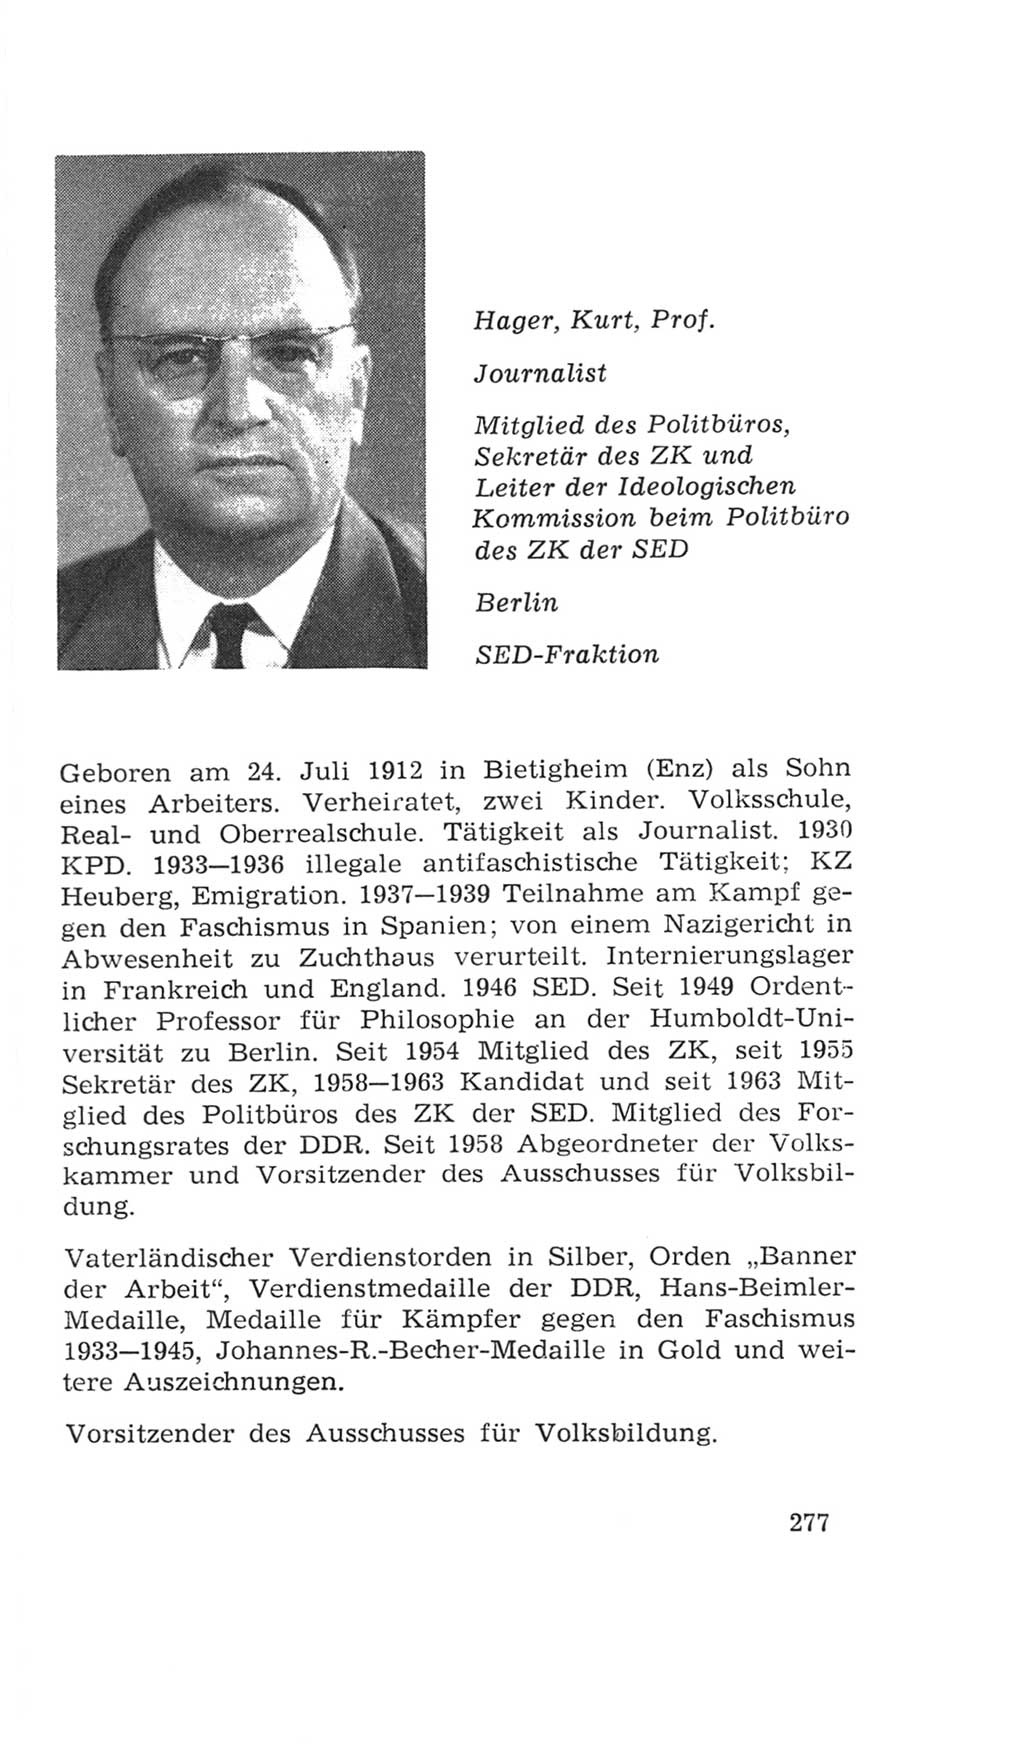 Volkskammer (VK) der Deutschen Demokratischen Republik (DDR), 4. Wahlperiode 1963-1967, Seite 277 (VK. DDR 4. WP. 1963-1967, S. 277)